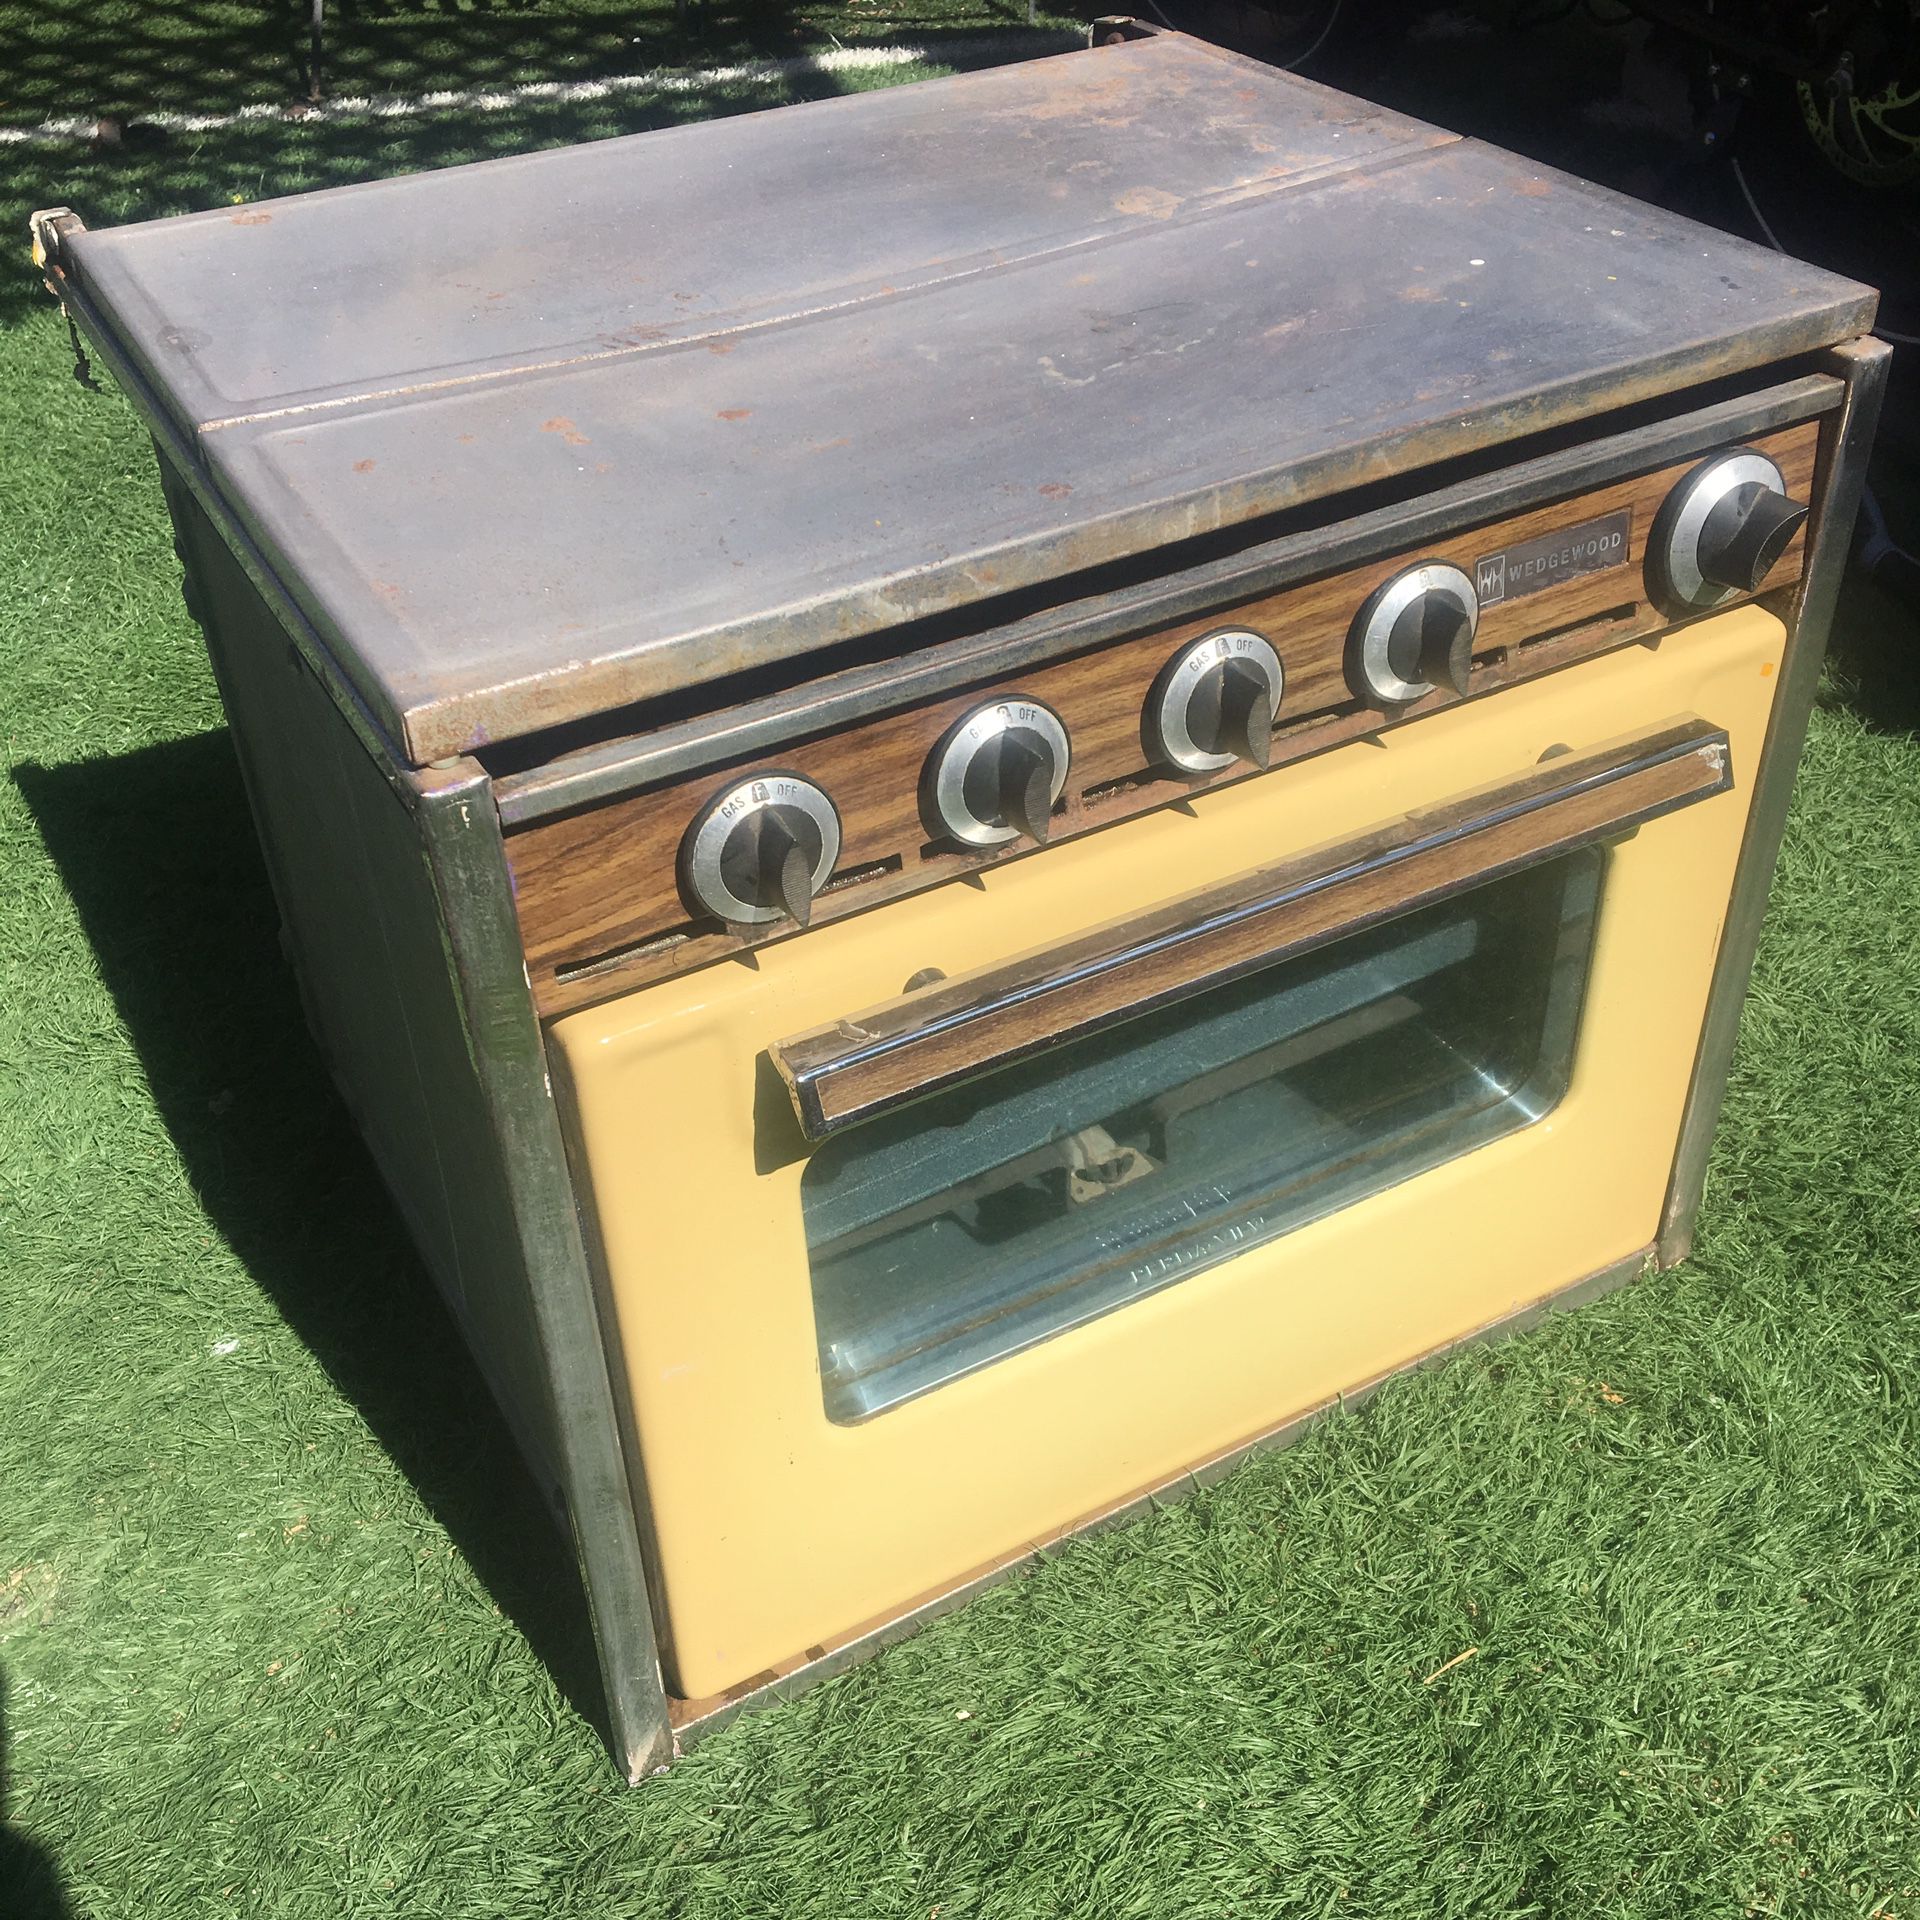 Wedge wood camper rv vintage trailer oven stove